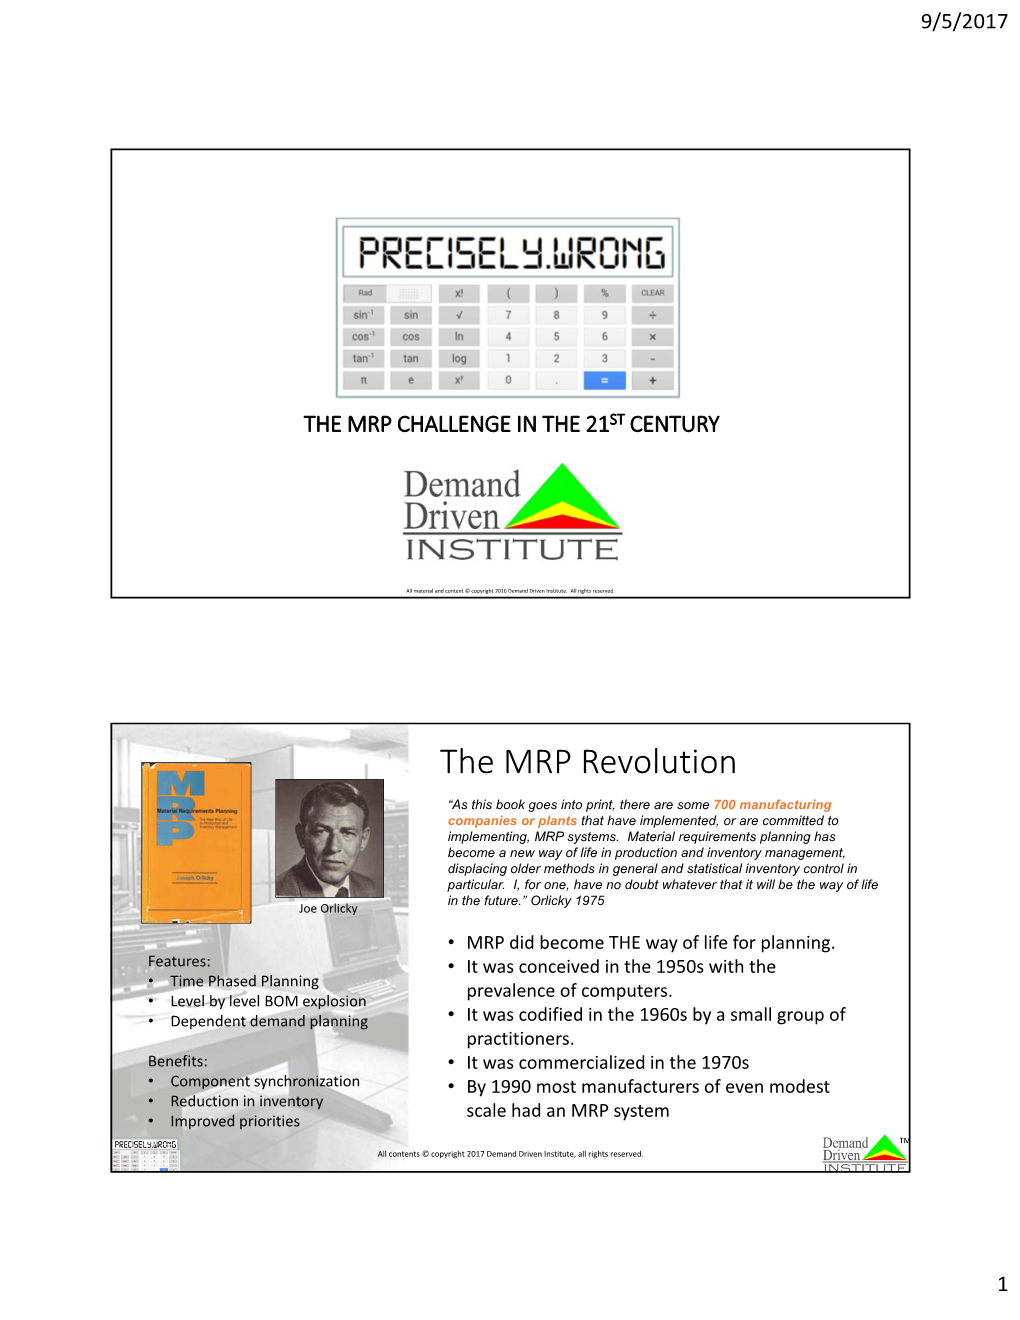 The MRP Revolution